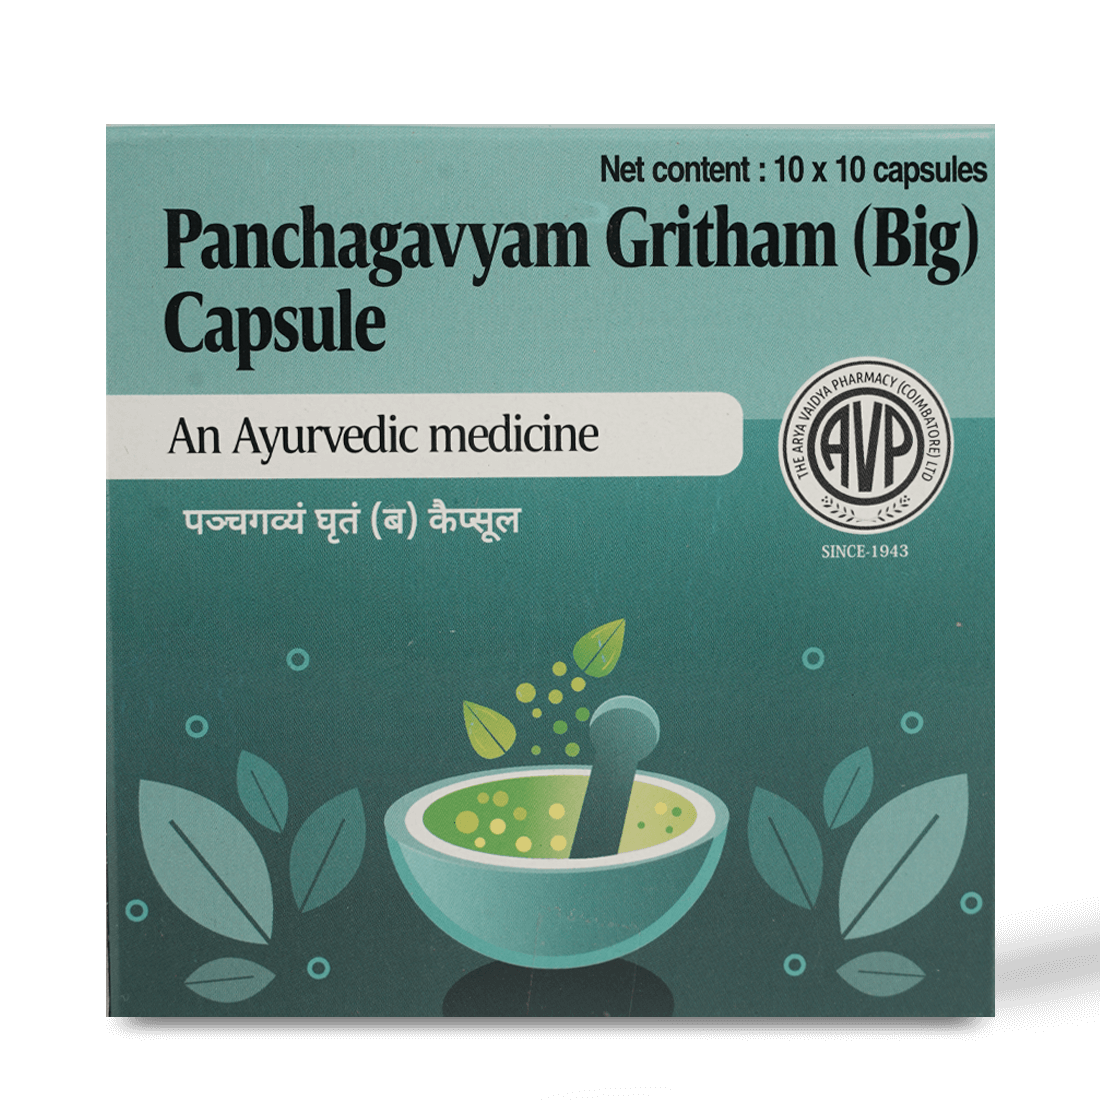 Panchagavyam Gritham (Big) Capsule